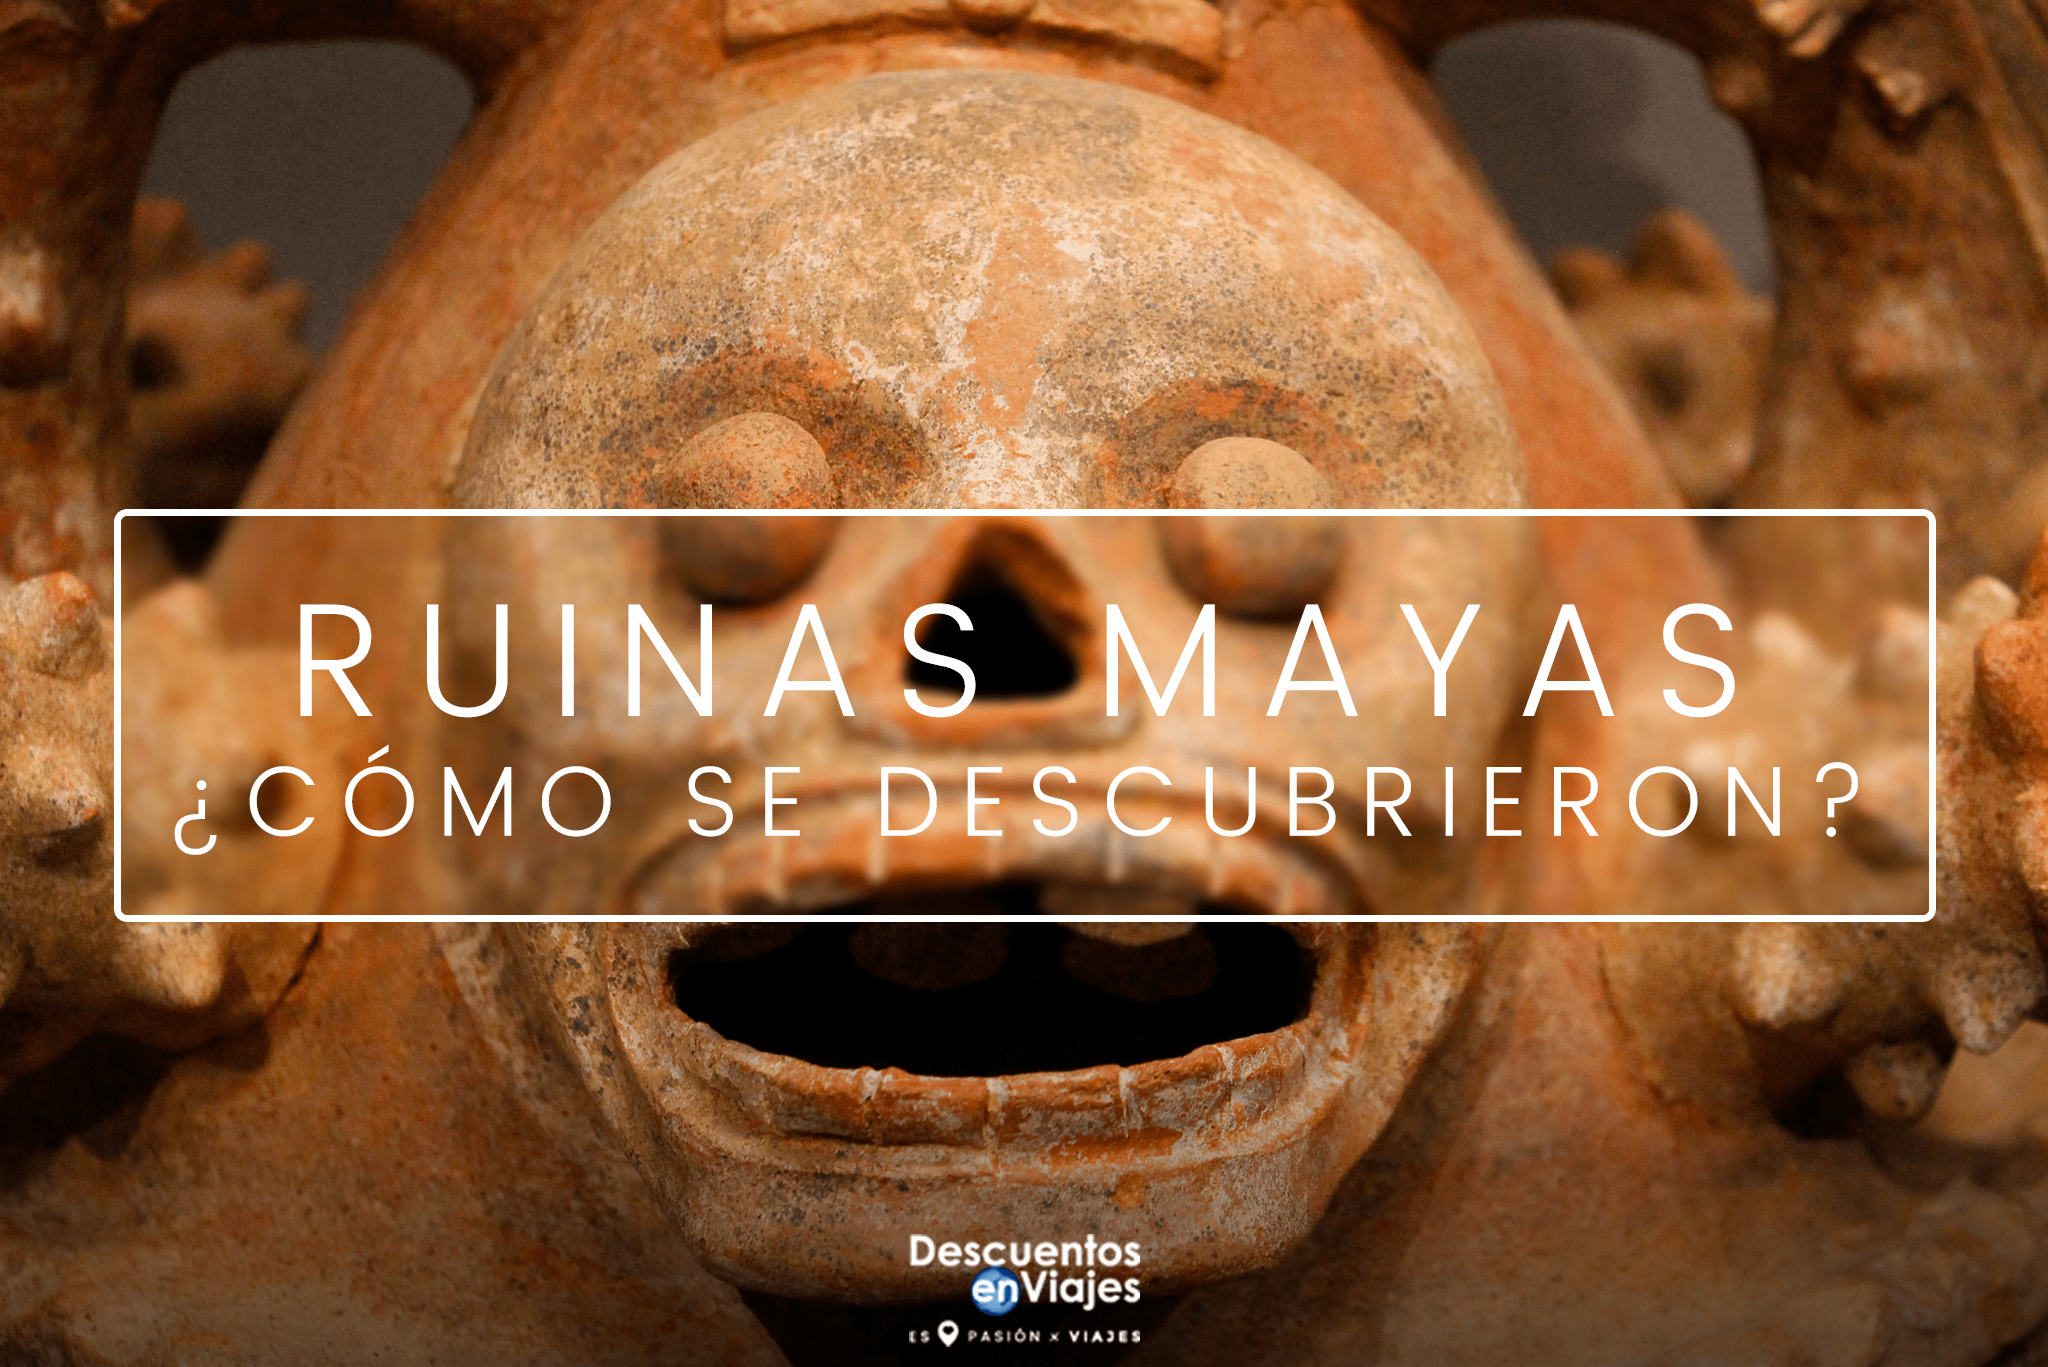 ruinas mayas descuentos viajes